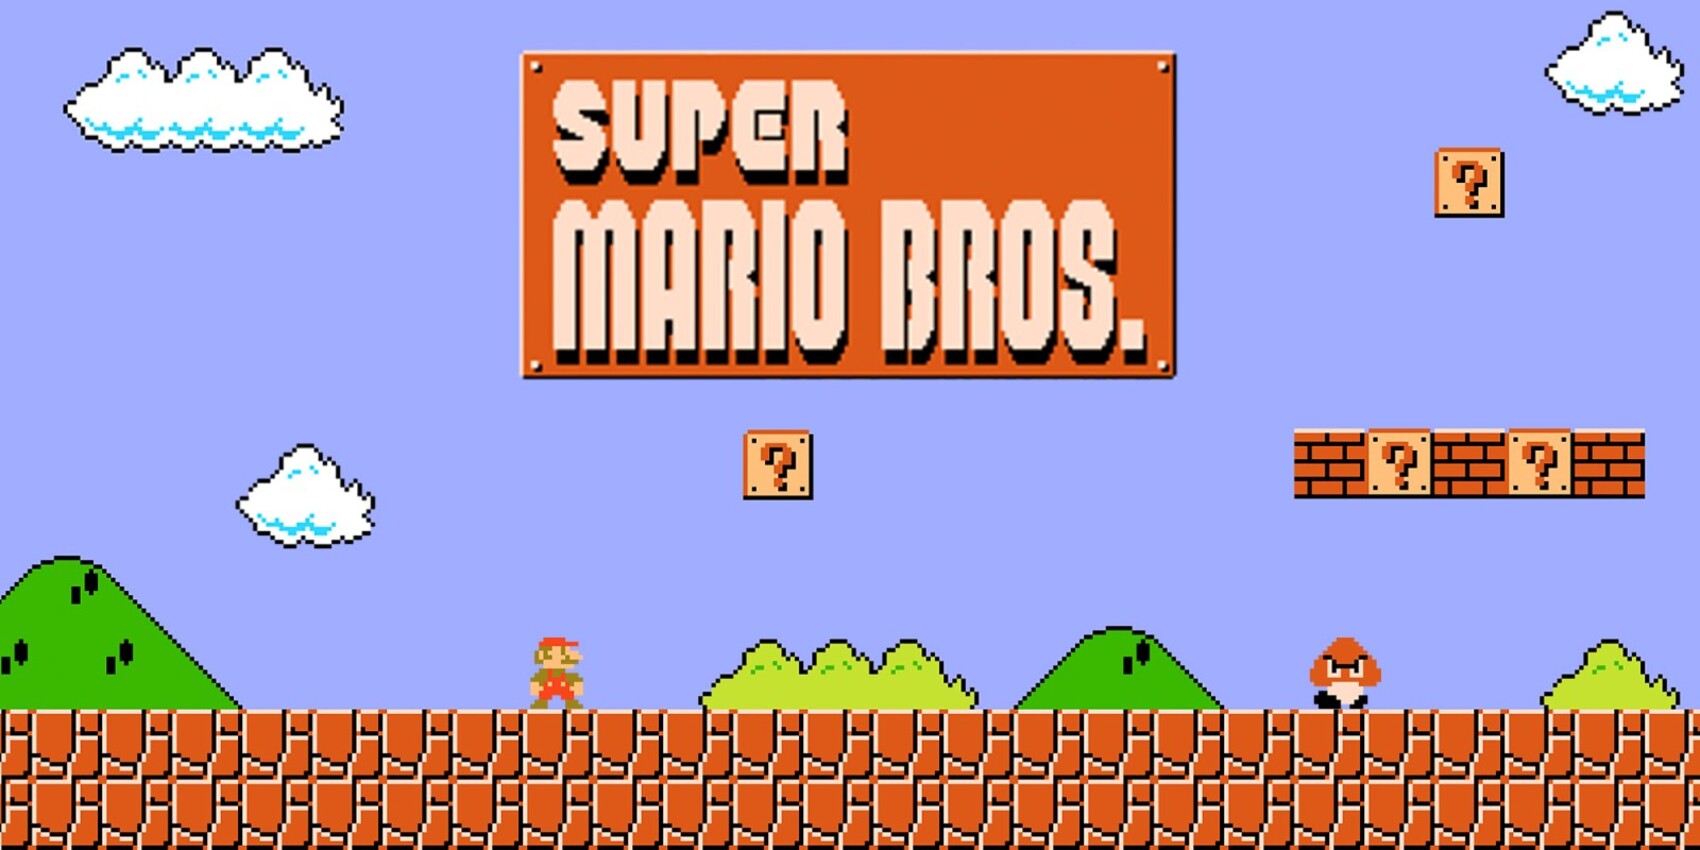 😁 Композитор Nintendo розповів, як Пол Маккартні заспівав йому саундтрек з Super Mario Bros